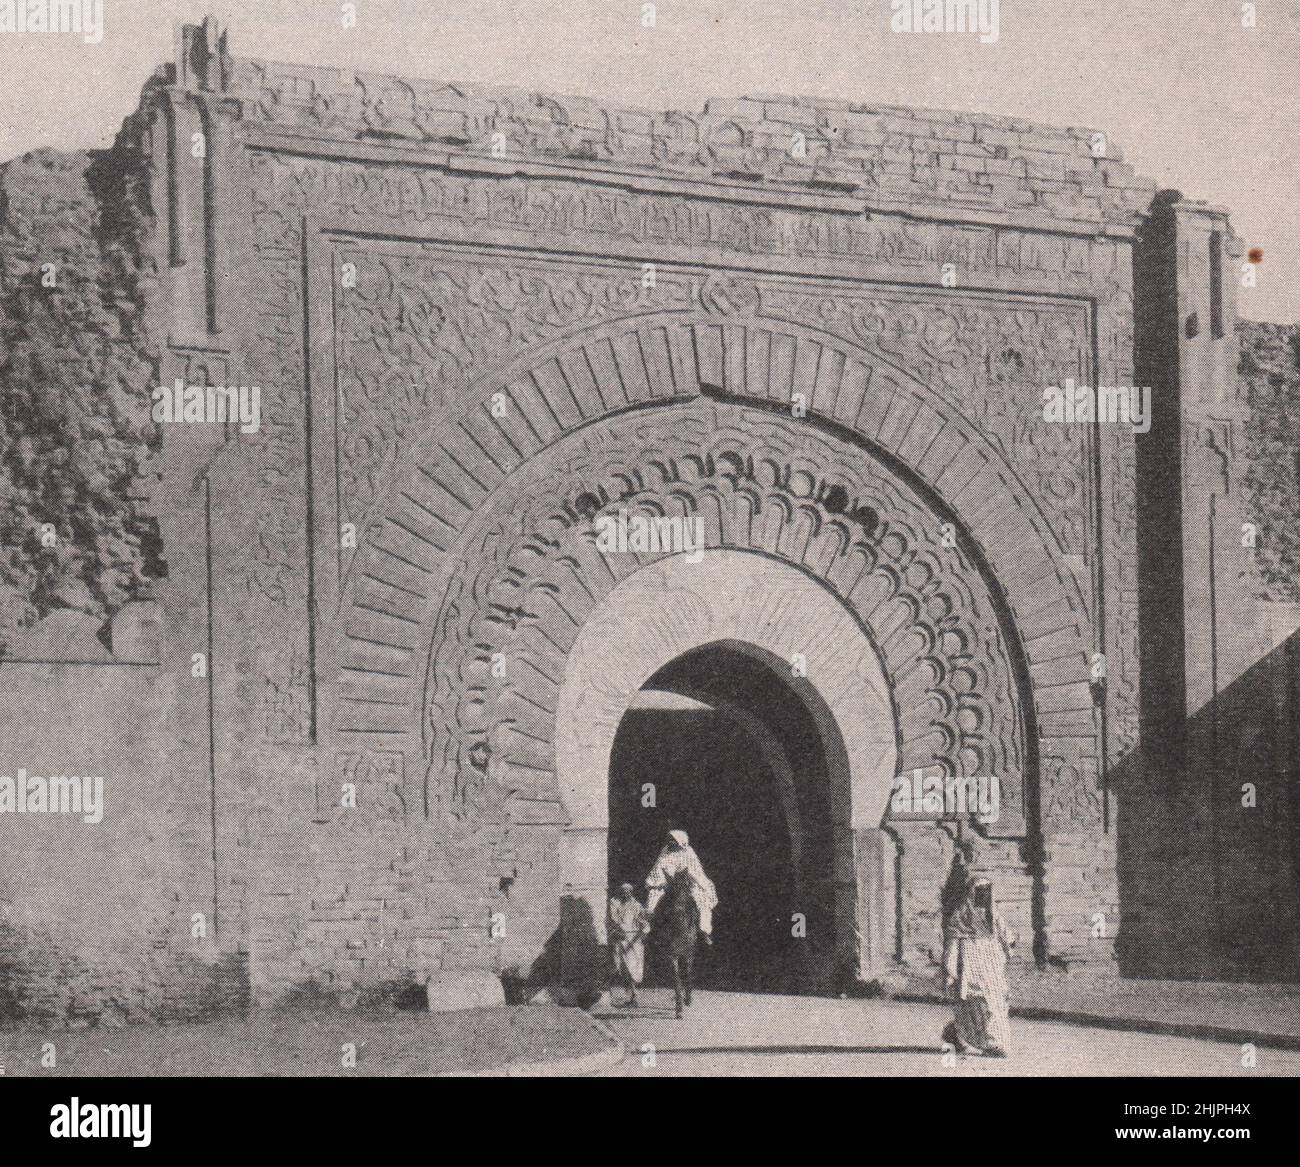 Un des portails météo dans les murs de Marrakech. Maroc. Etats de Barbarie (1923) Banque D'Images